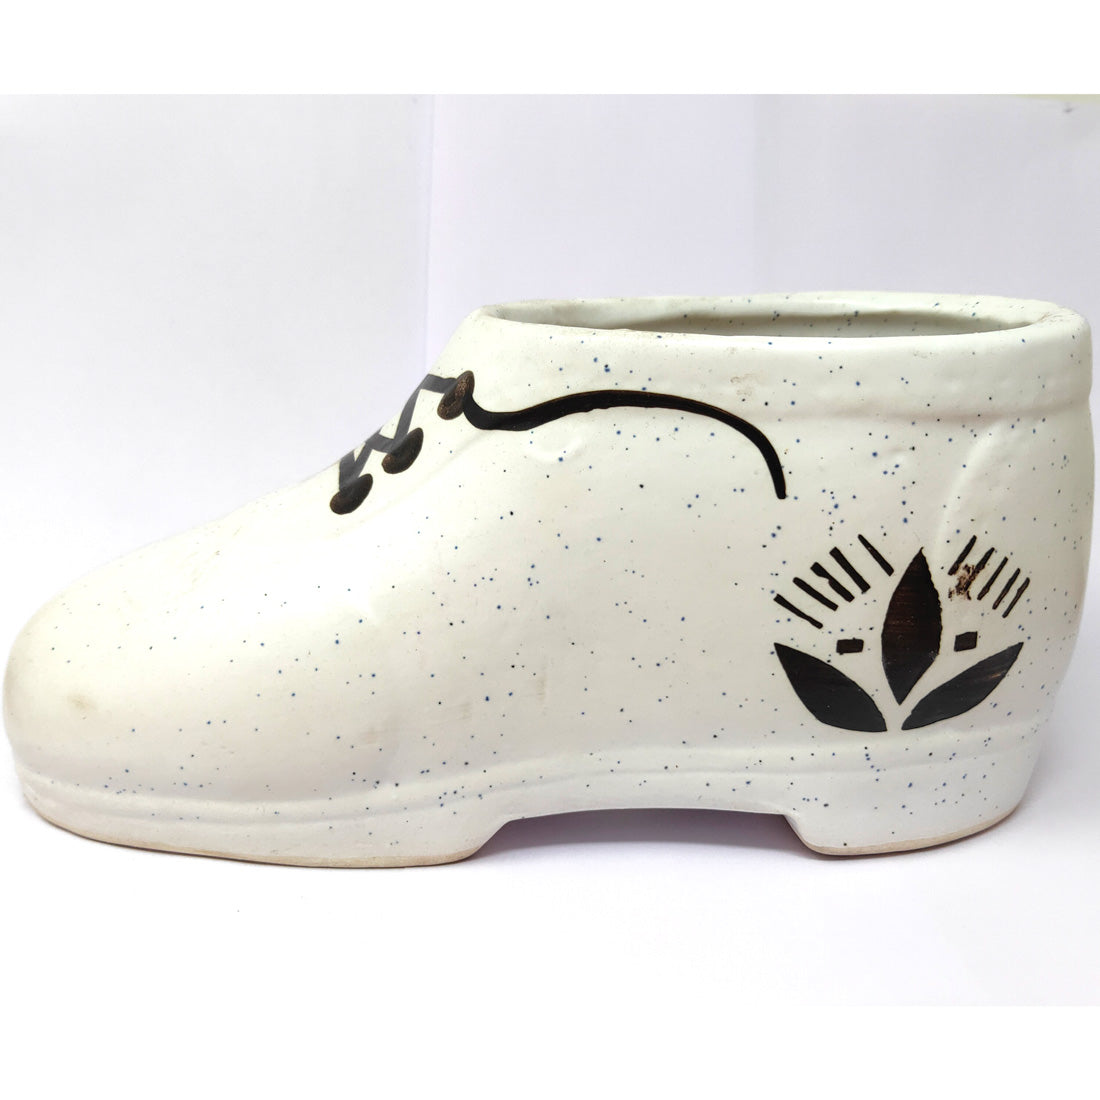 Anokhi Ada Shoes Design Ceramic Planters Pots for Home Decoration ( White, DA-004)